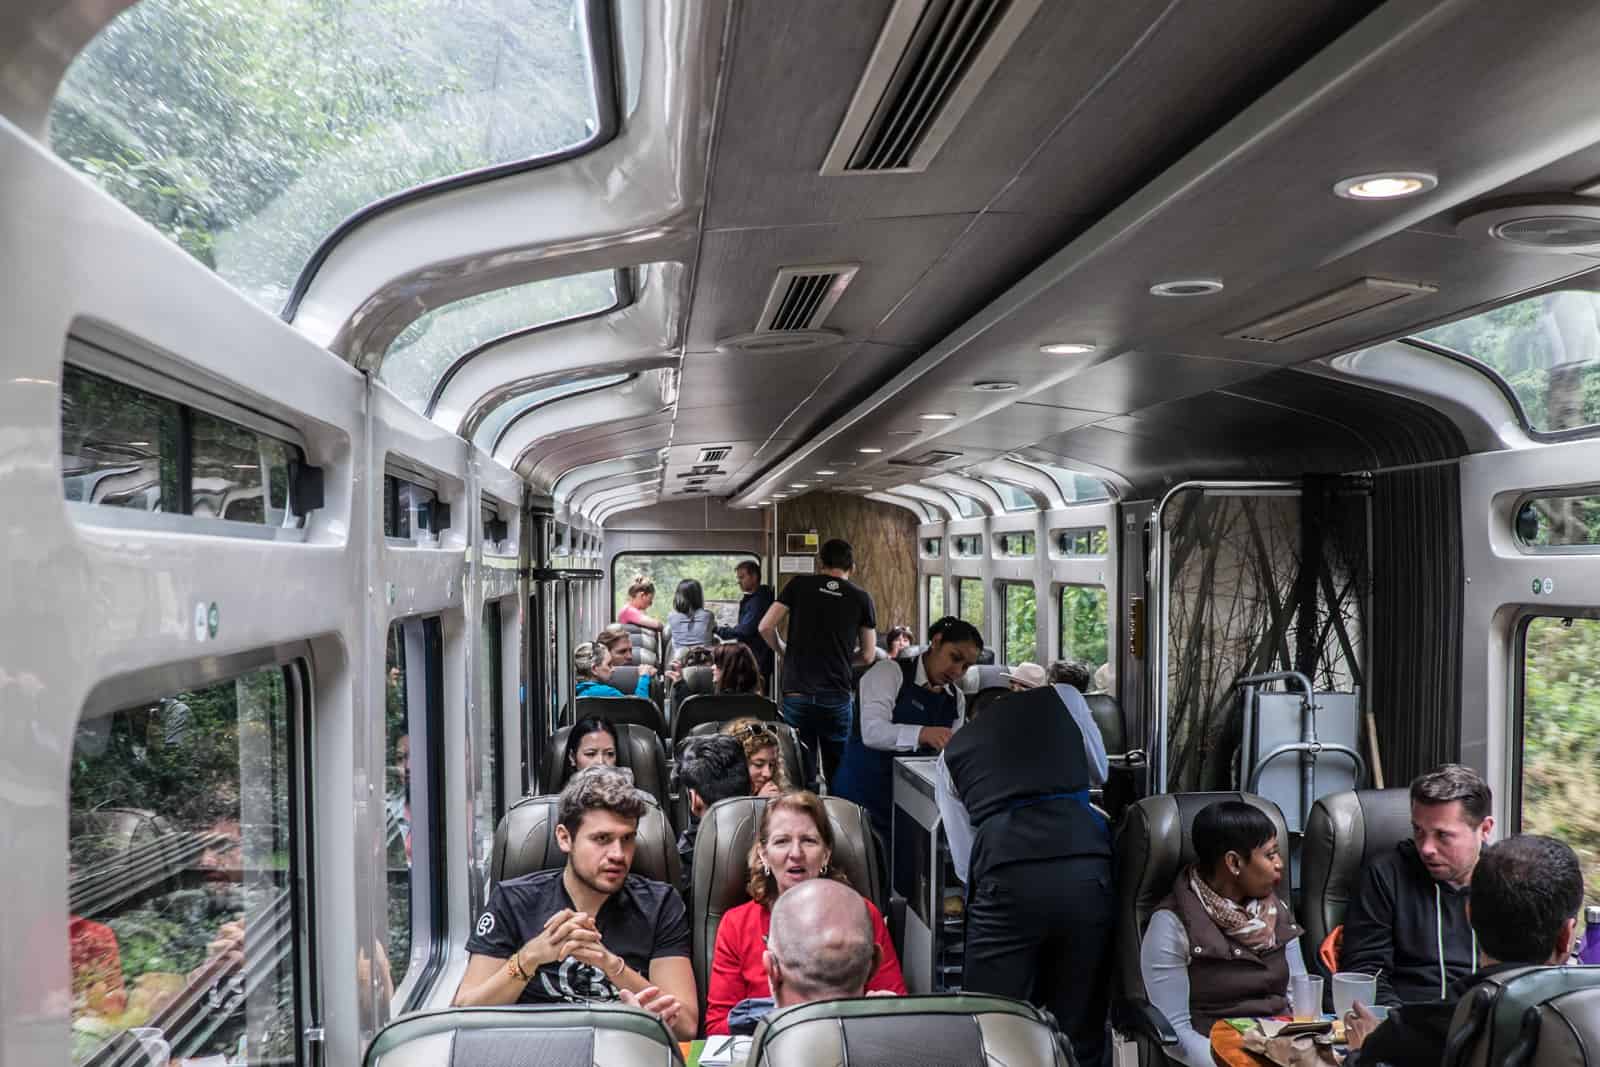 Passengers inside a Machu Picchu train carriage in Peru.